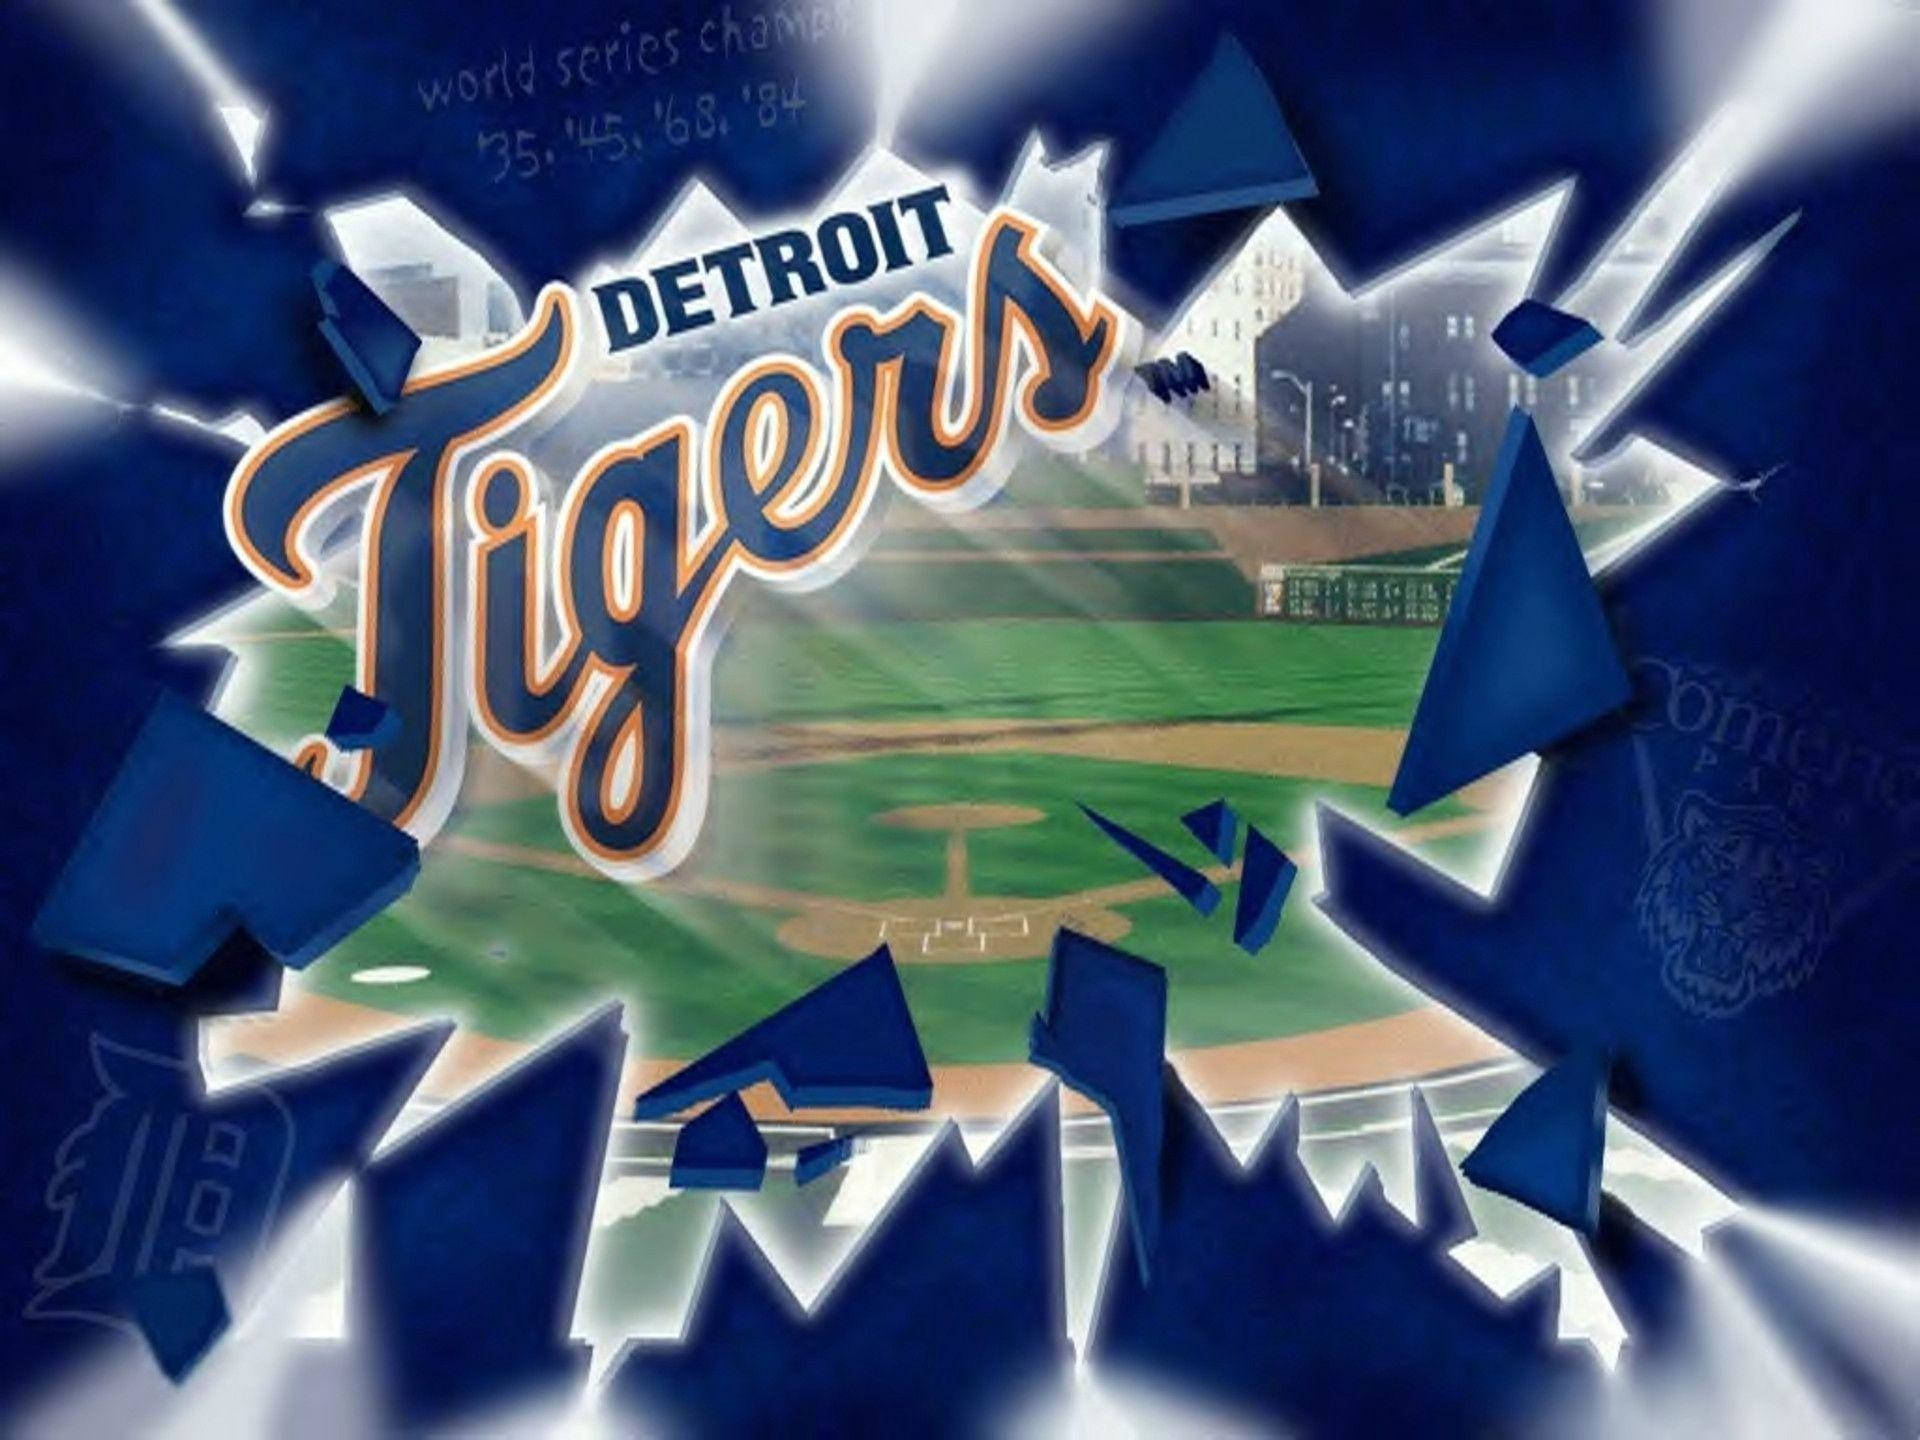 Detroit Tigers Broken Glass Banner Wallpaper